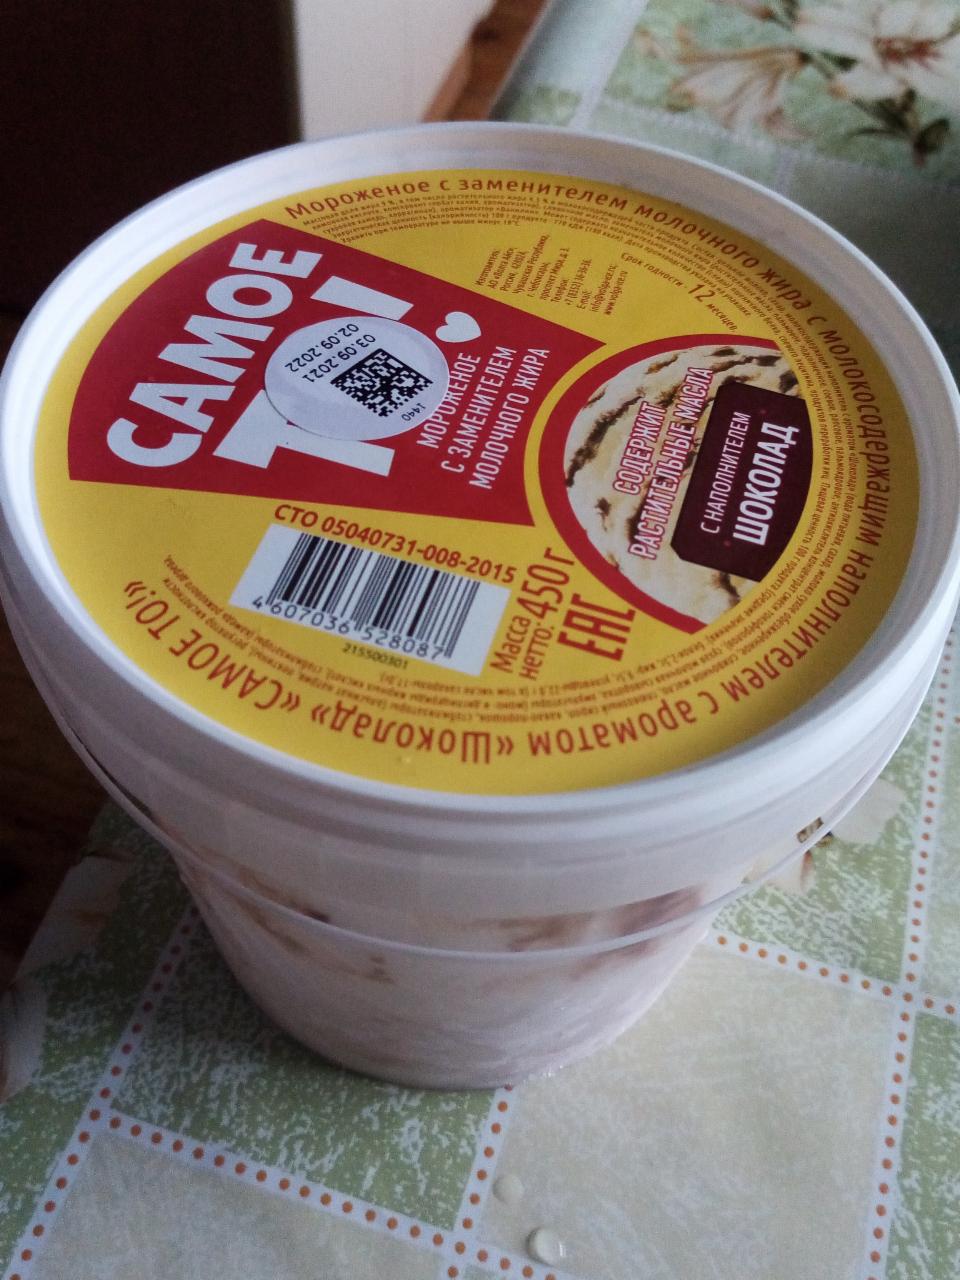 Фото - Мороженое с наполнителем шоколада Самое то!